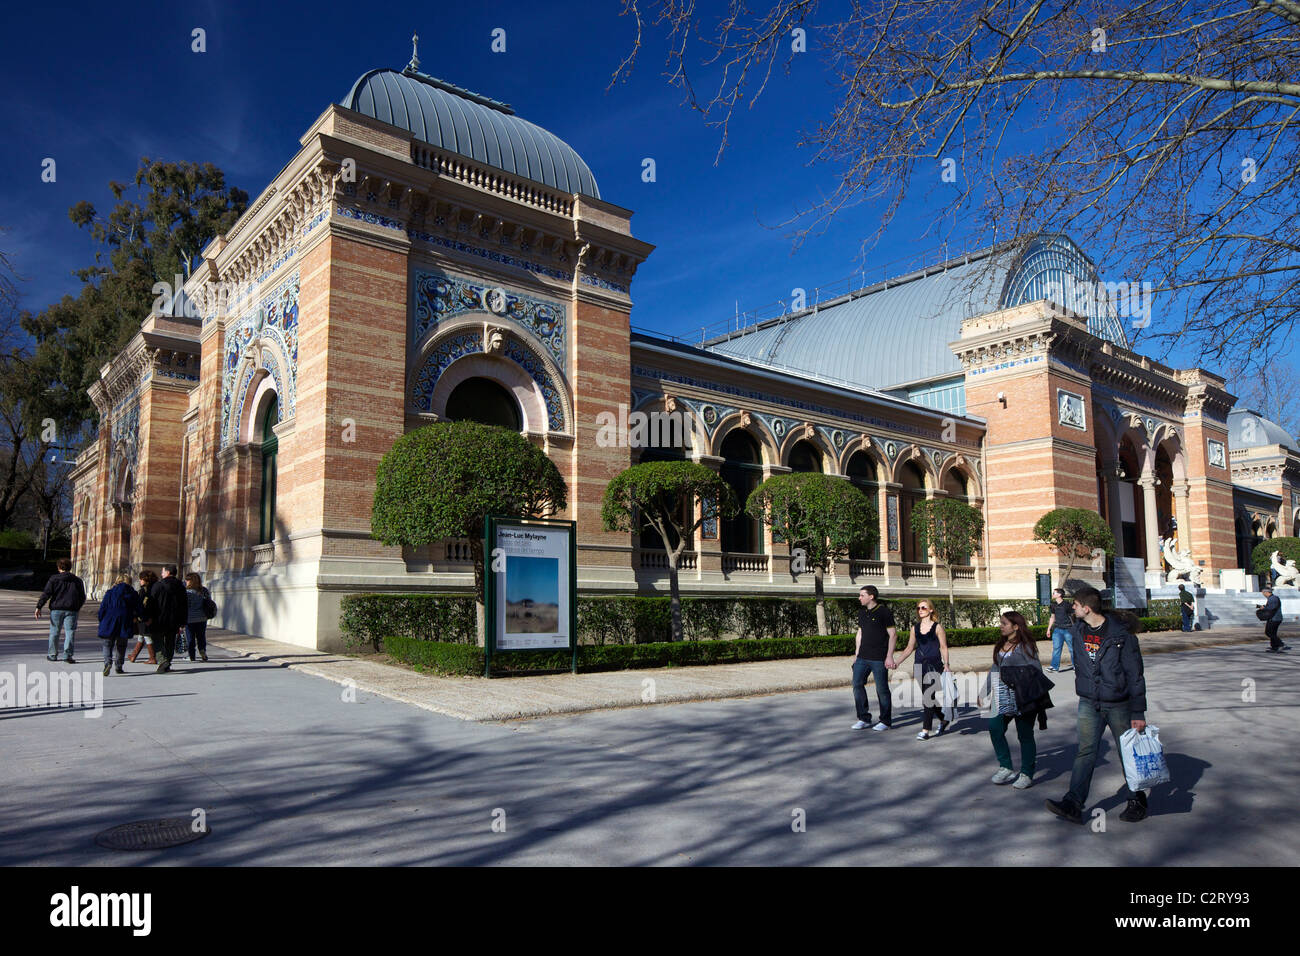 Palacio Velazquez, Parque del Retiro, Retiro Park, Madrid, Spain, Europe, EU Stock Photo